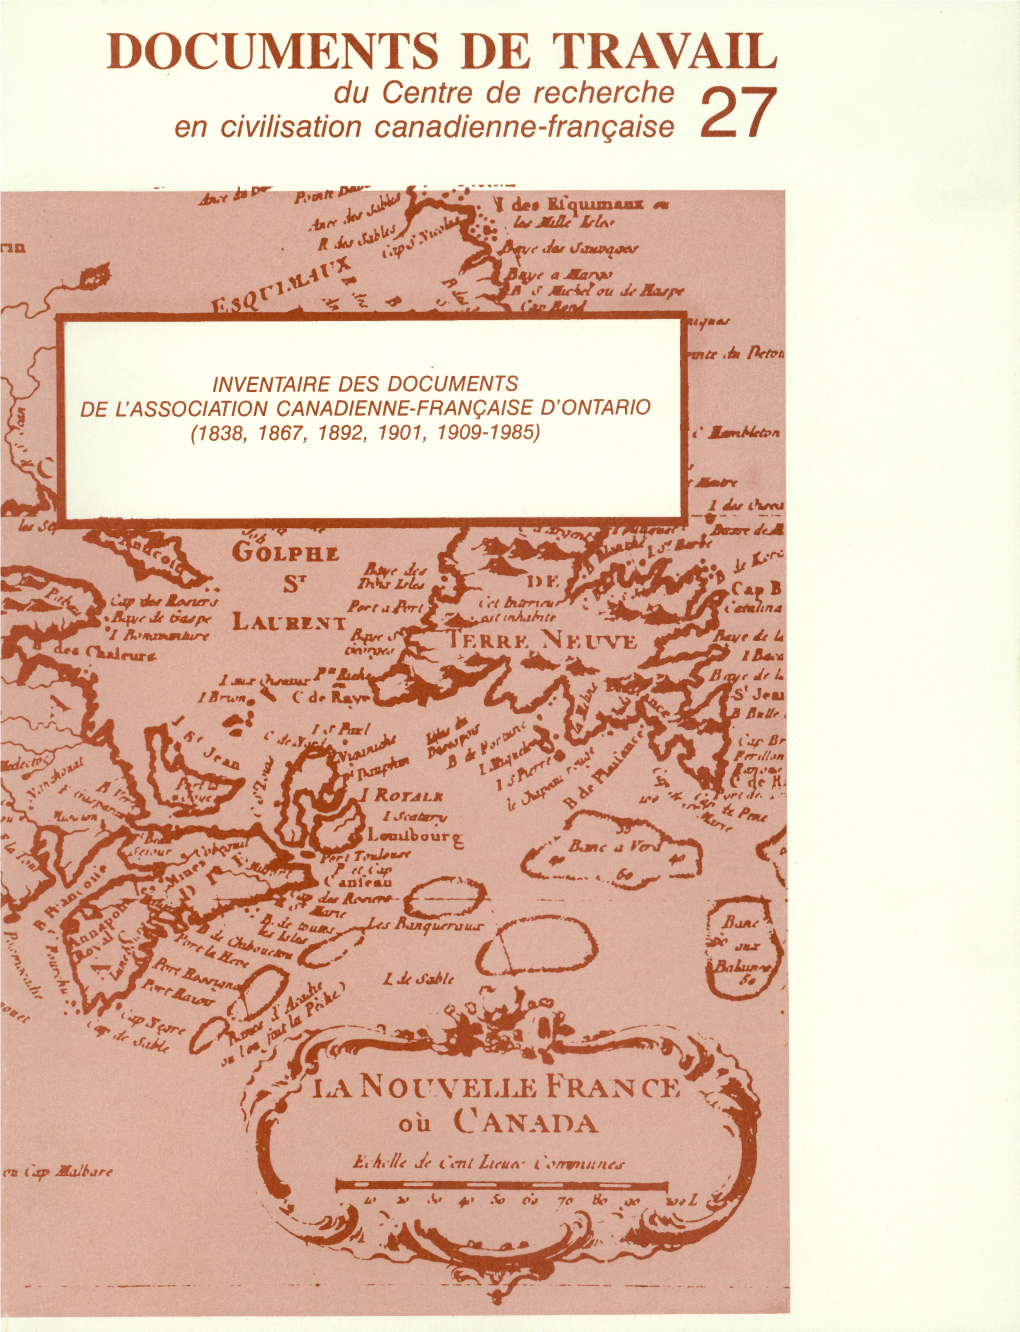 INVENTAIRE DES DOCUMENTS DE L'association CANADIENNE-FRANÇAISE D'ontario (1838, 1867, 1892, 1901, 1909-1985) ' Mtmtmtton